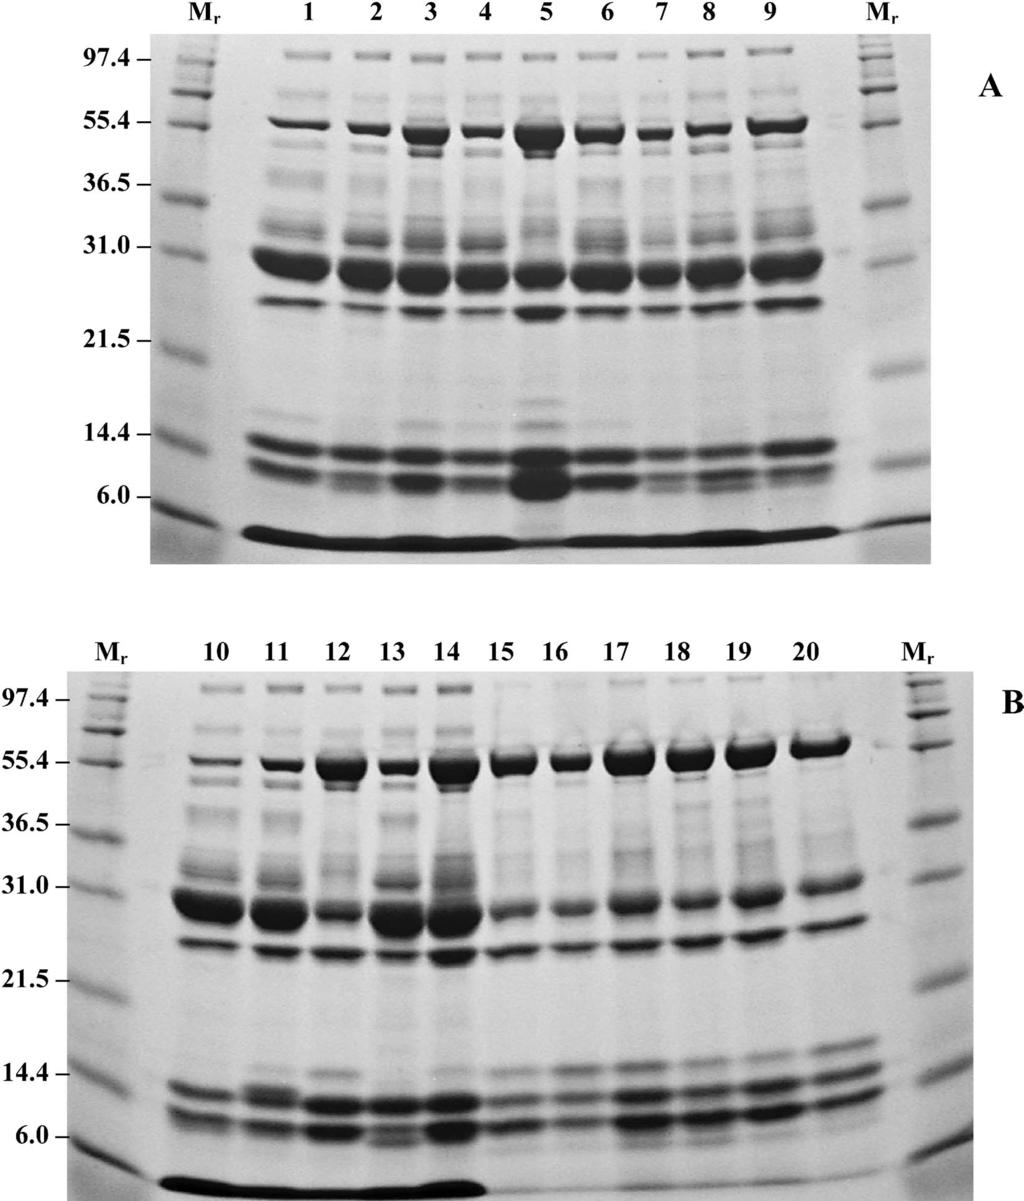 MACKESSY ET AL. VENOM OF CROTALUS OREGANUS CONCOLOR 775 Fig. 4. SDS-PAGE analysis of Crotalus oreganus concolor crude venoms under reducing conditions.